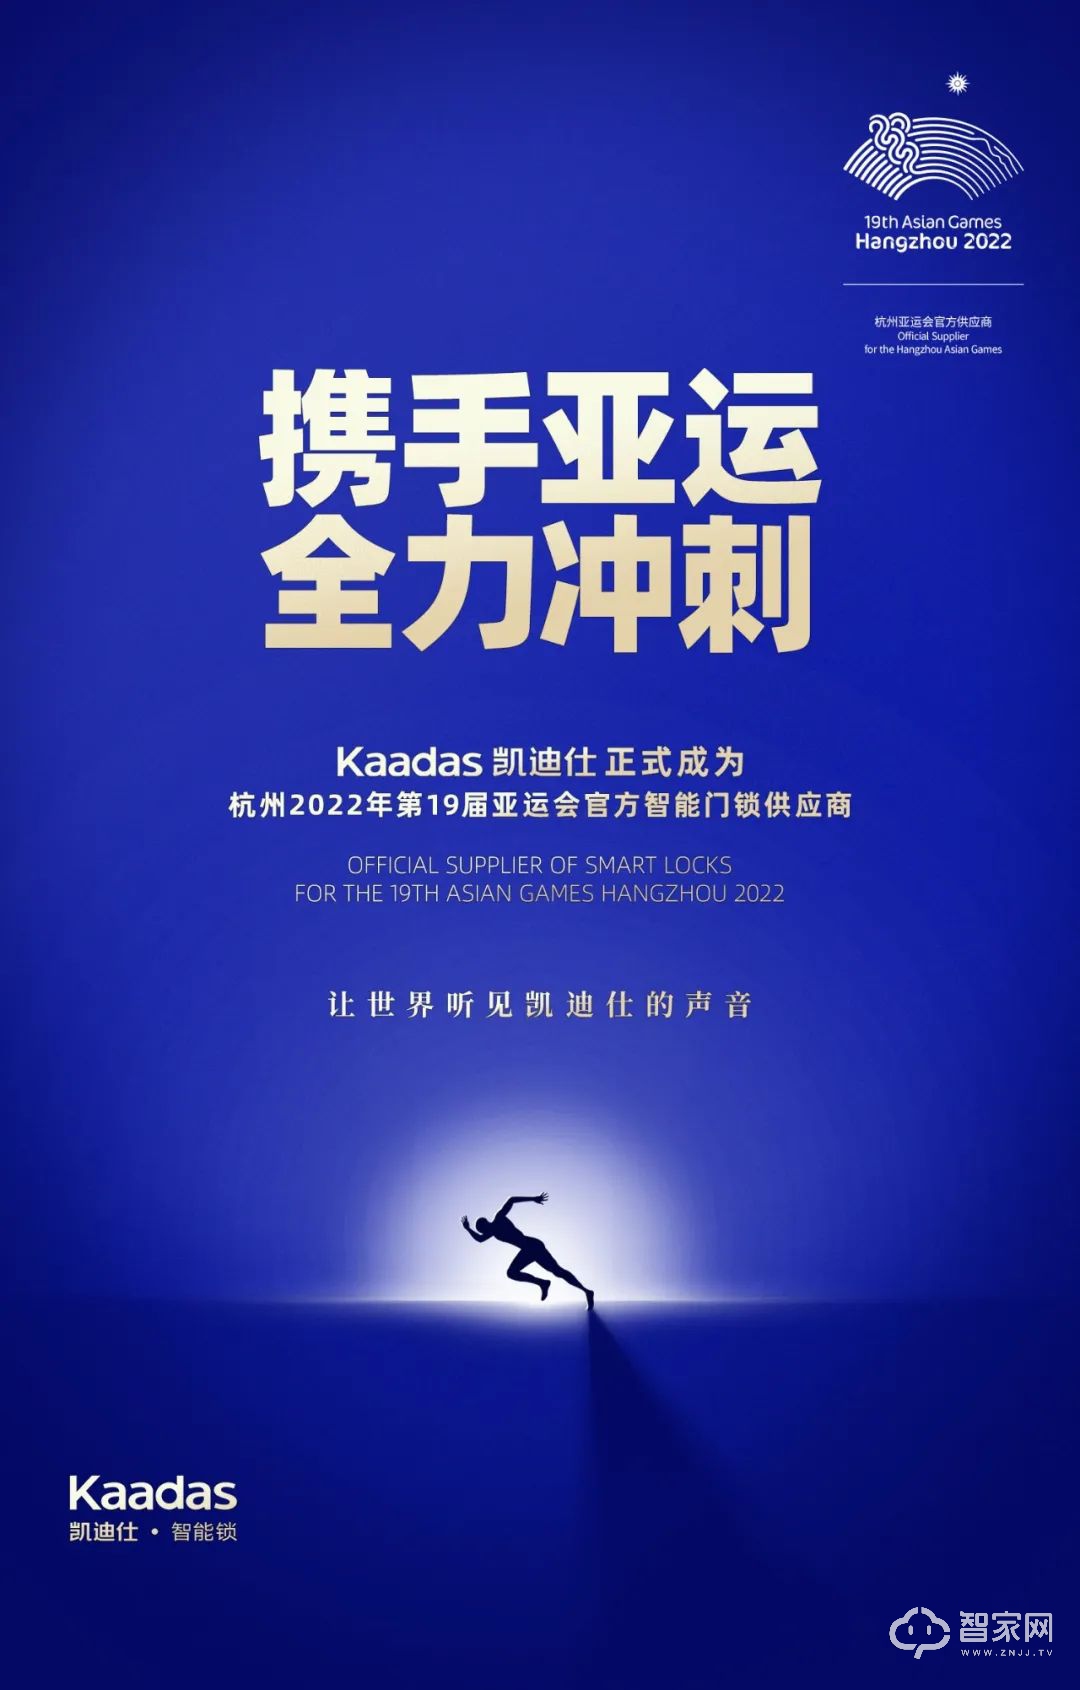 官宣！Kaadas凯迪仕正式成为杭州亚运会、亚残运会官方智能门锁供应商！